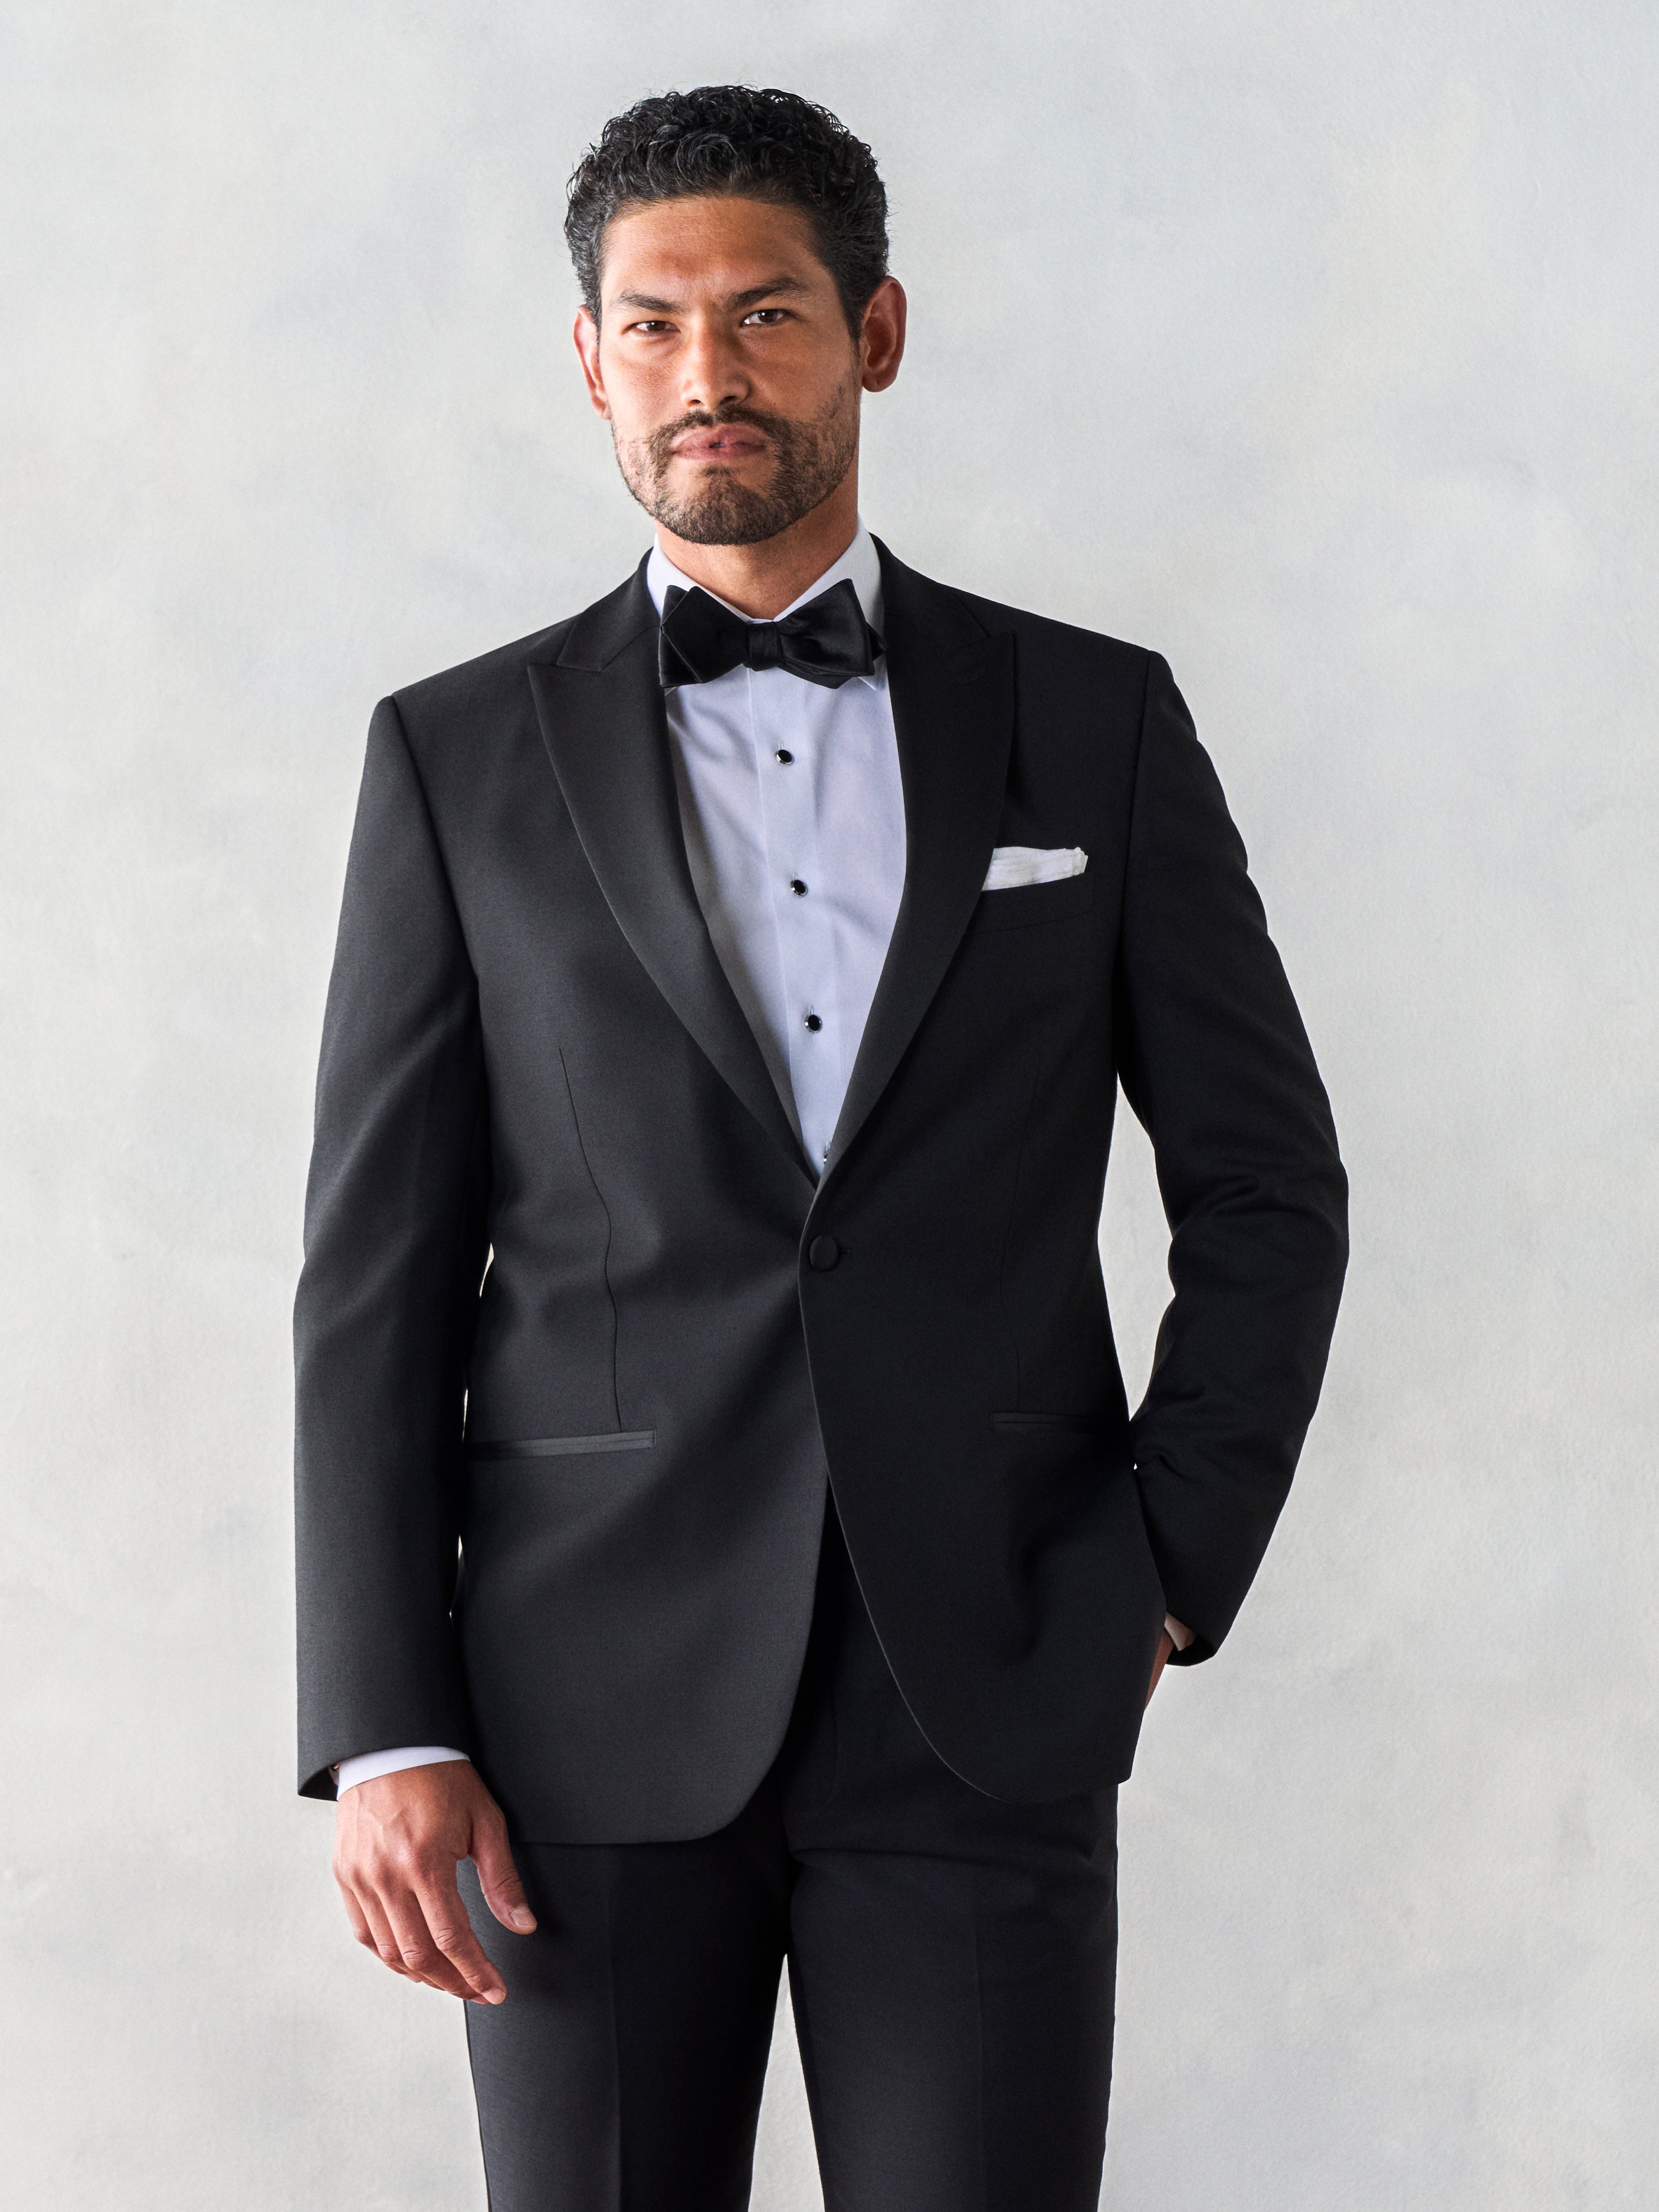 A Complete Guide to Black Suit & Shirt Combinations - The Trend Spotter | Black  suit men, Black suit blue shirt, Black suit combinations